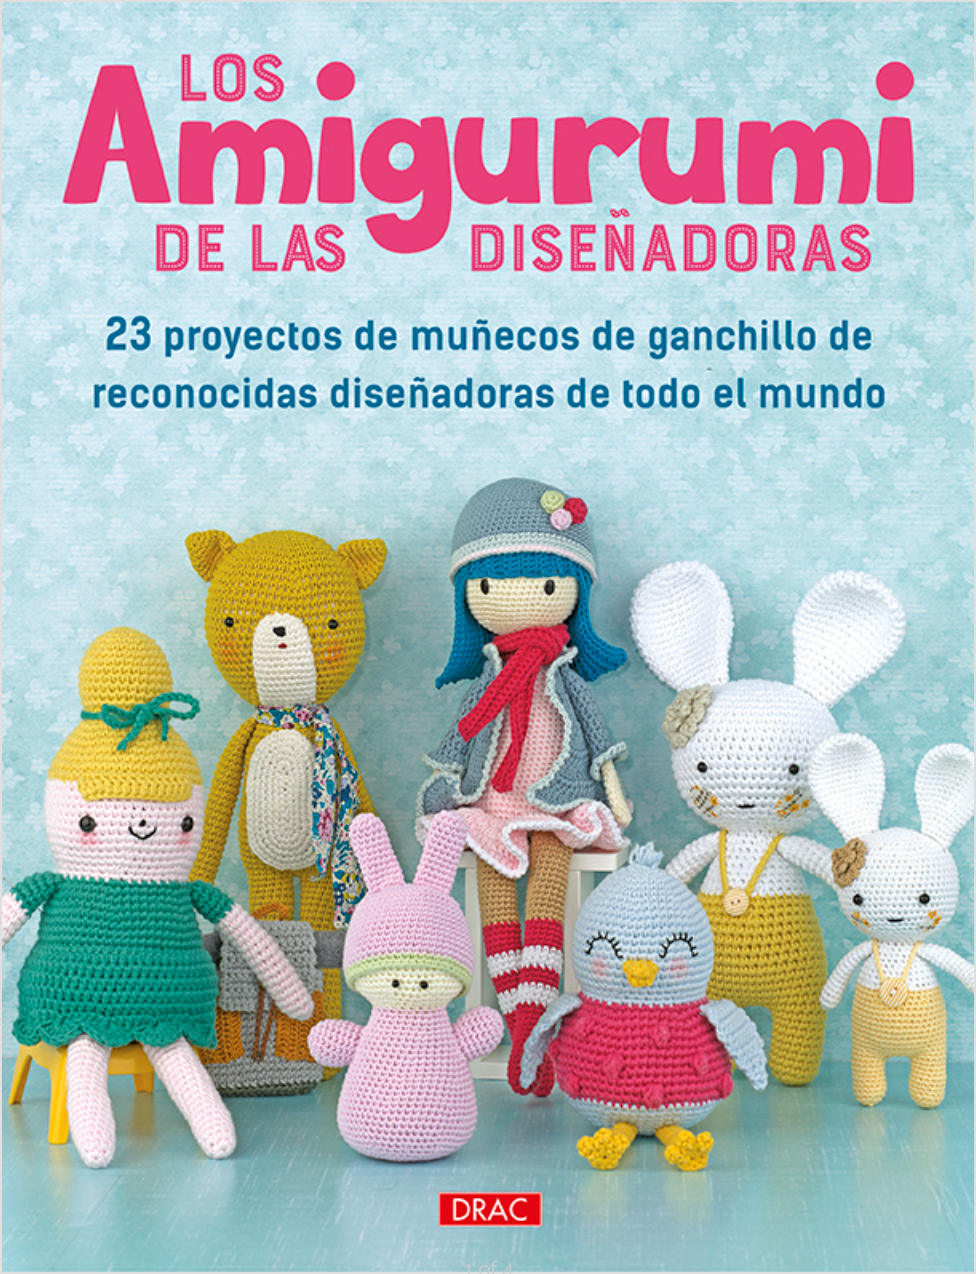 Amigurumis de Fantasía: 3 Patrones de Crochet - Ganchillo - Libro 001  (Spanish Edition)